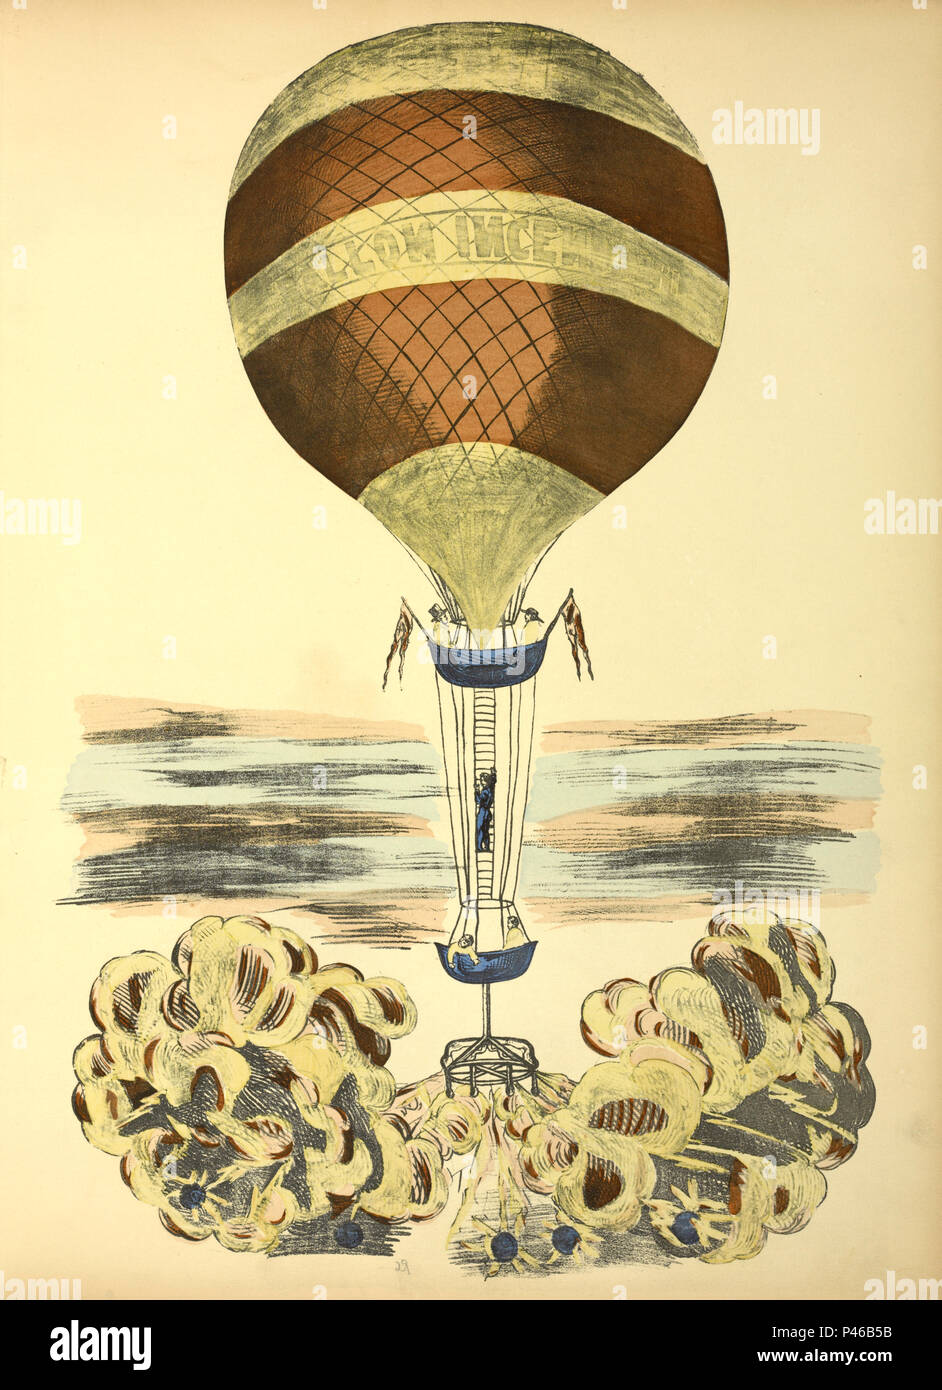 Historic balloon flight Stock Photo